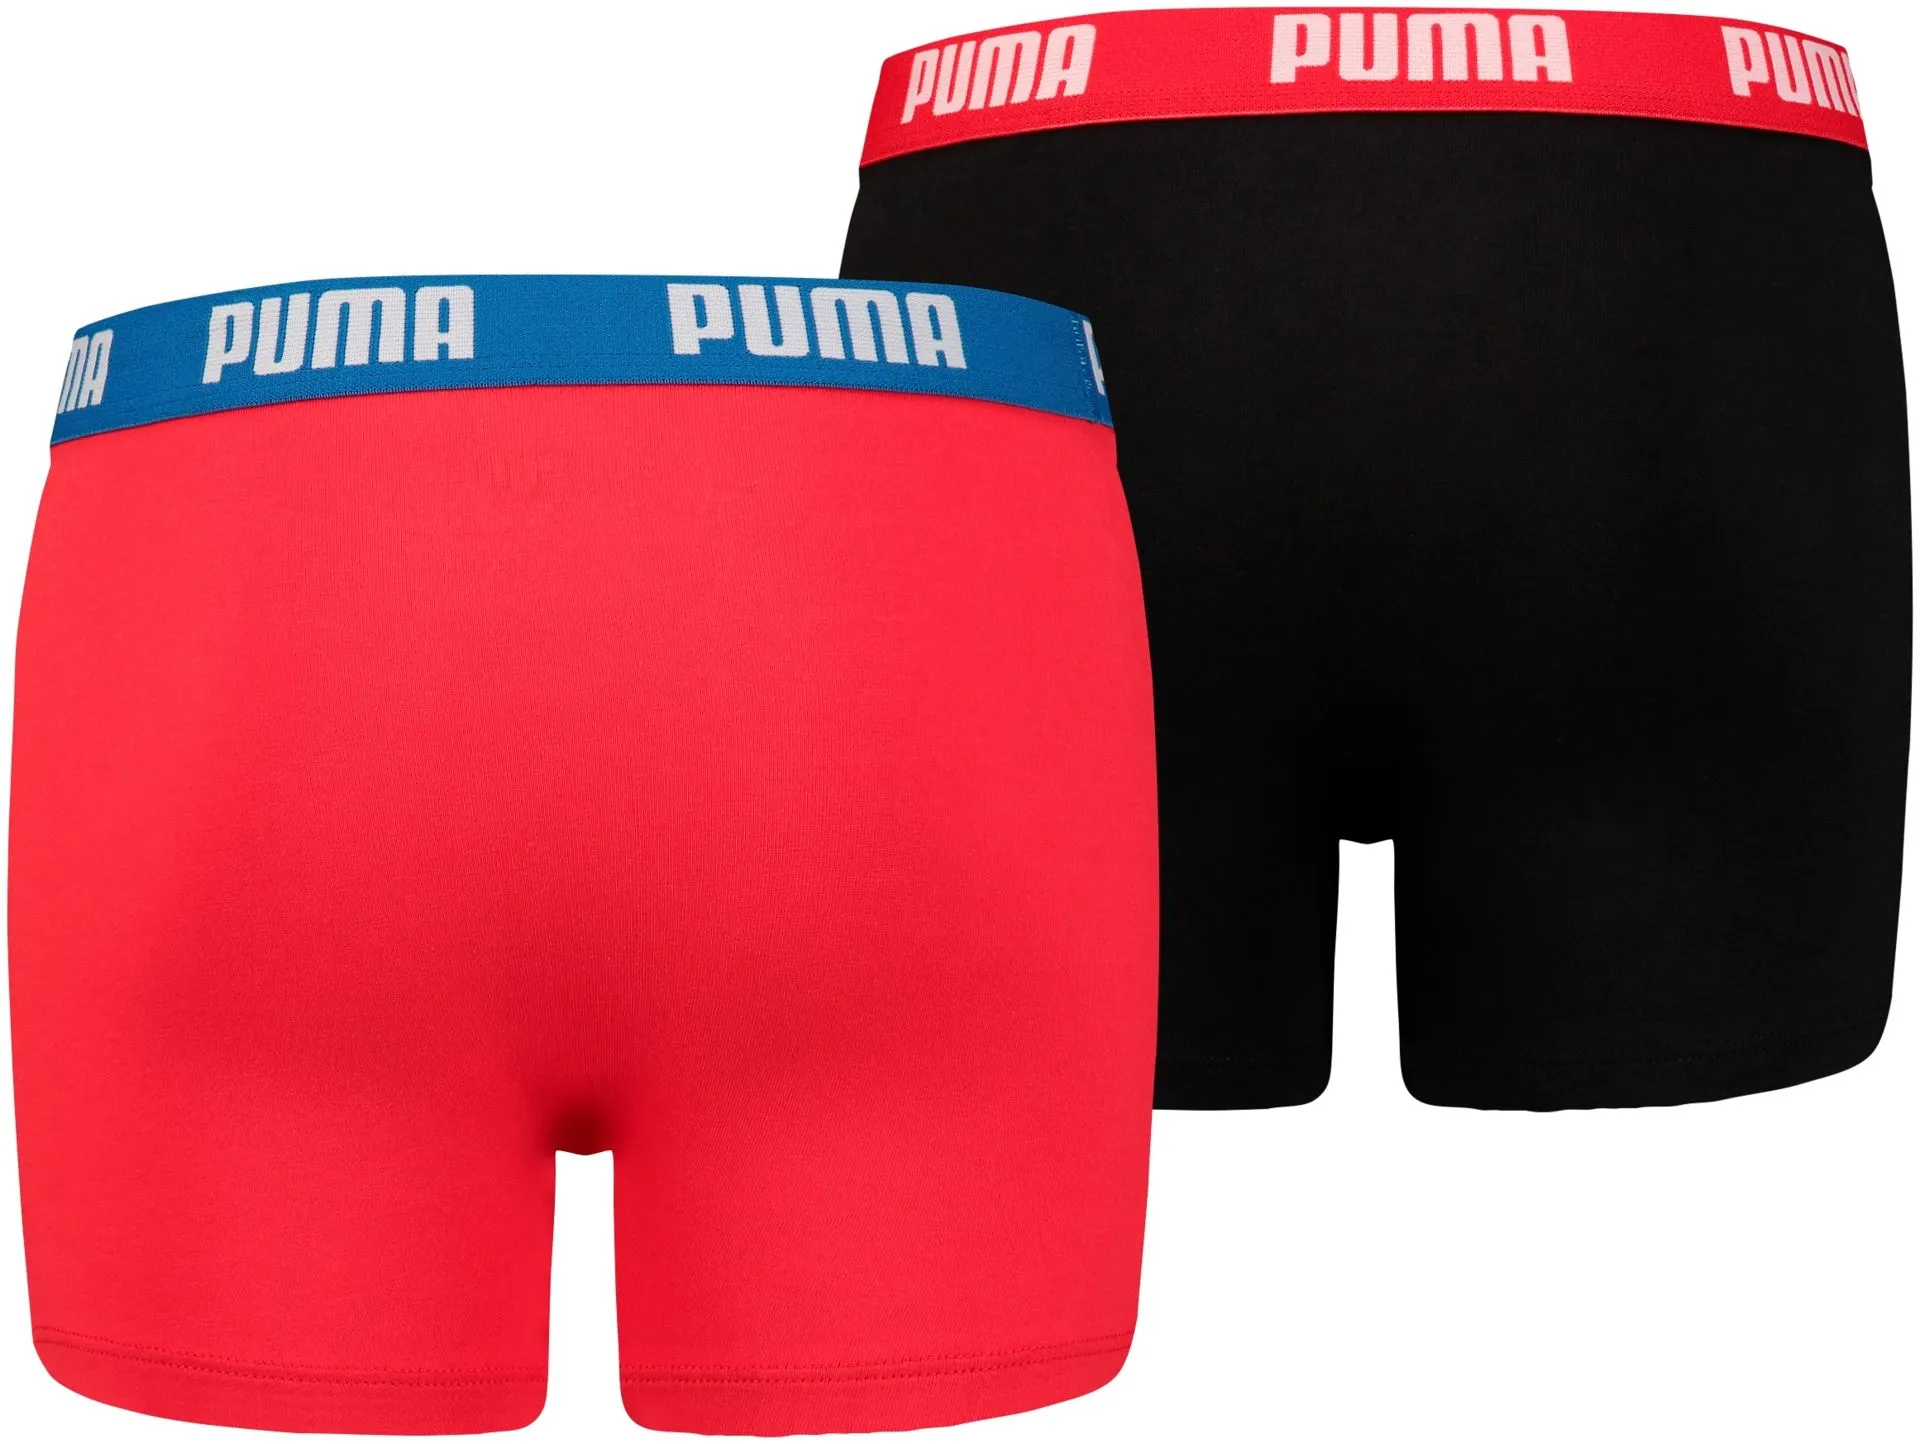 Puma lasten bokserit Basic 2-pack - Red/black - 2